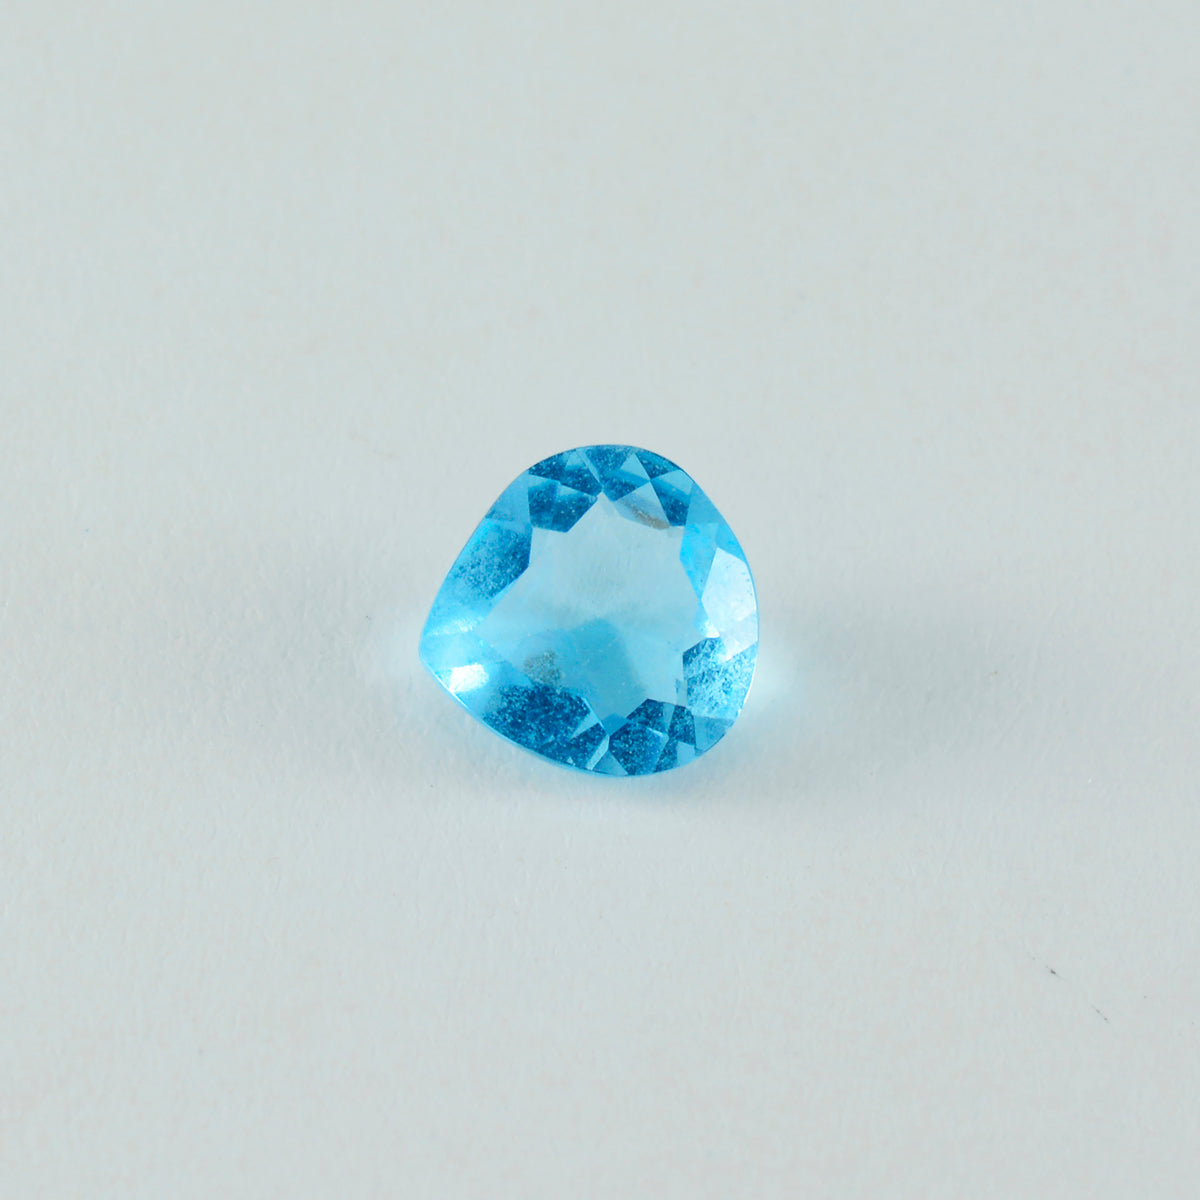 riyogems 1шт синий топаз cz ограненный 11х11 мм красивый качественный драгоценный камень в форме сердца